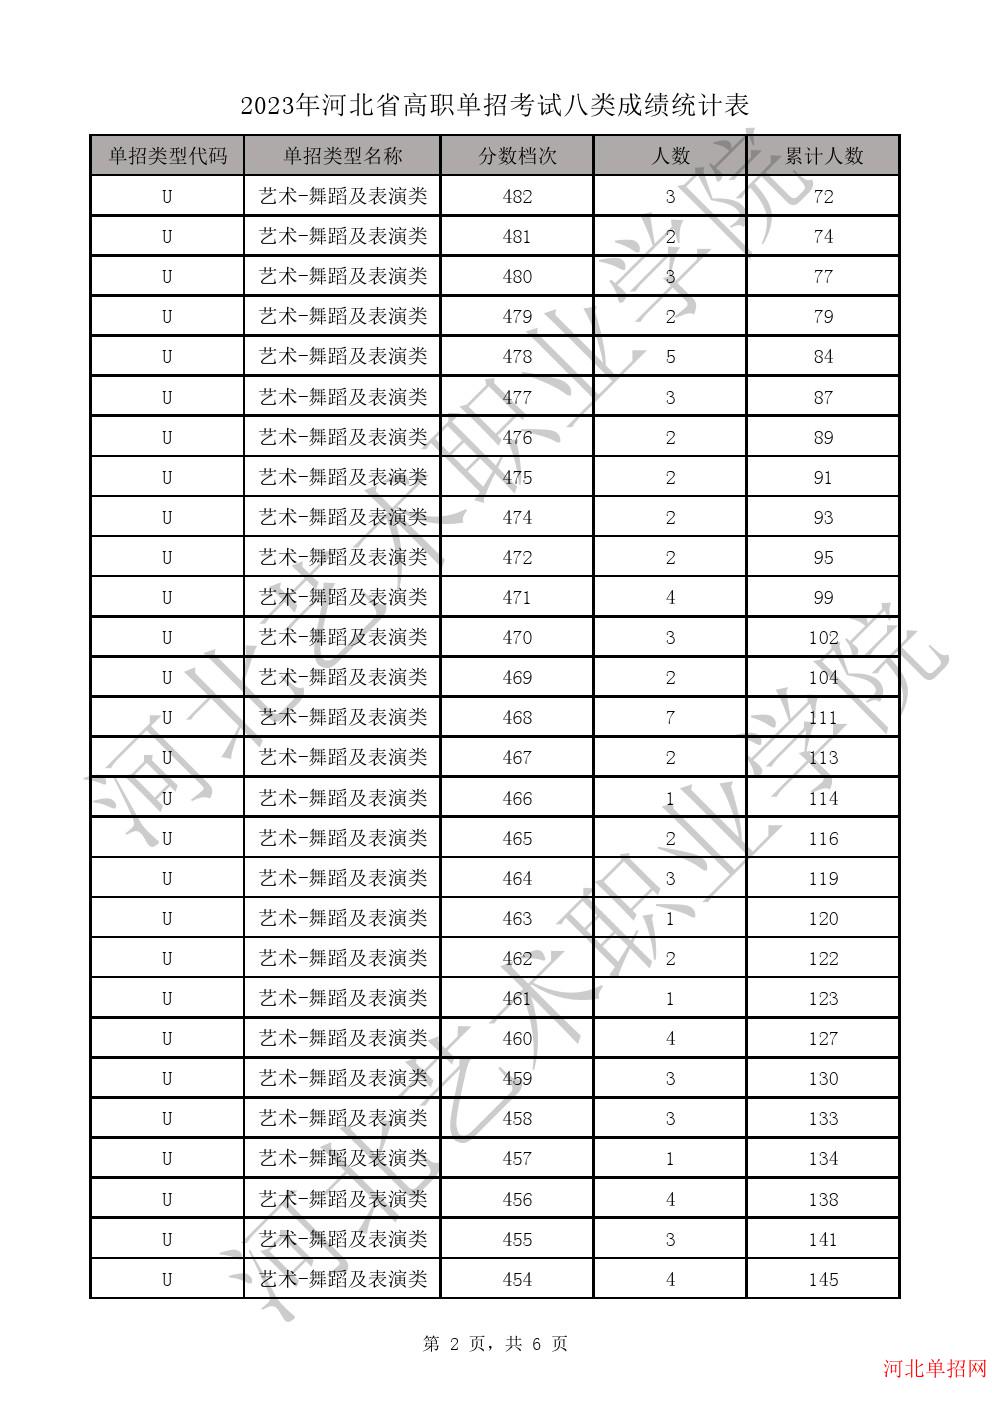 2023年河北省高职单招考试八类一分一档表-U艺术-舞蹈及表演类一分一档表 图2